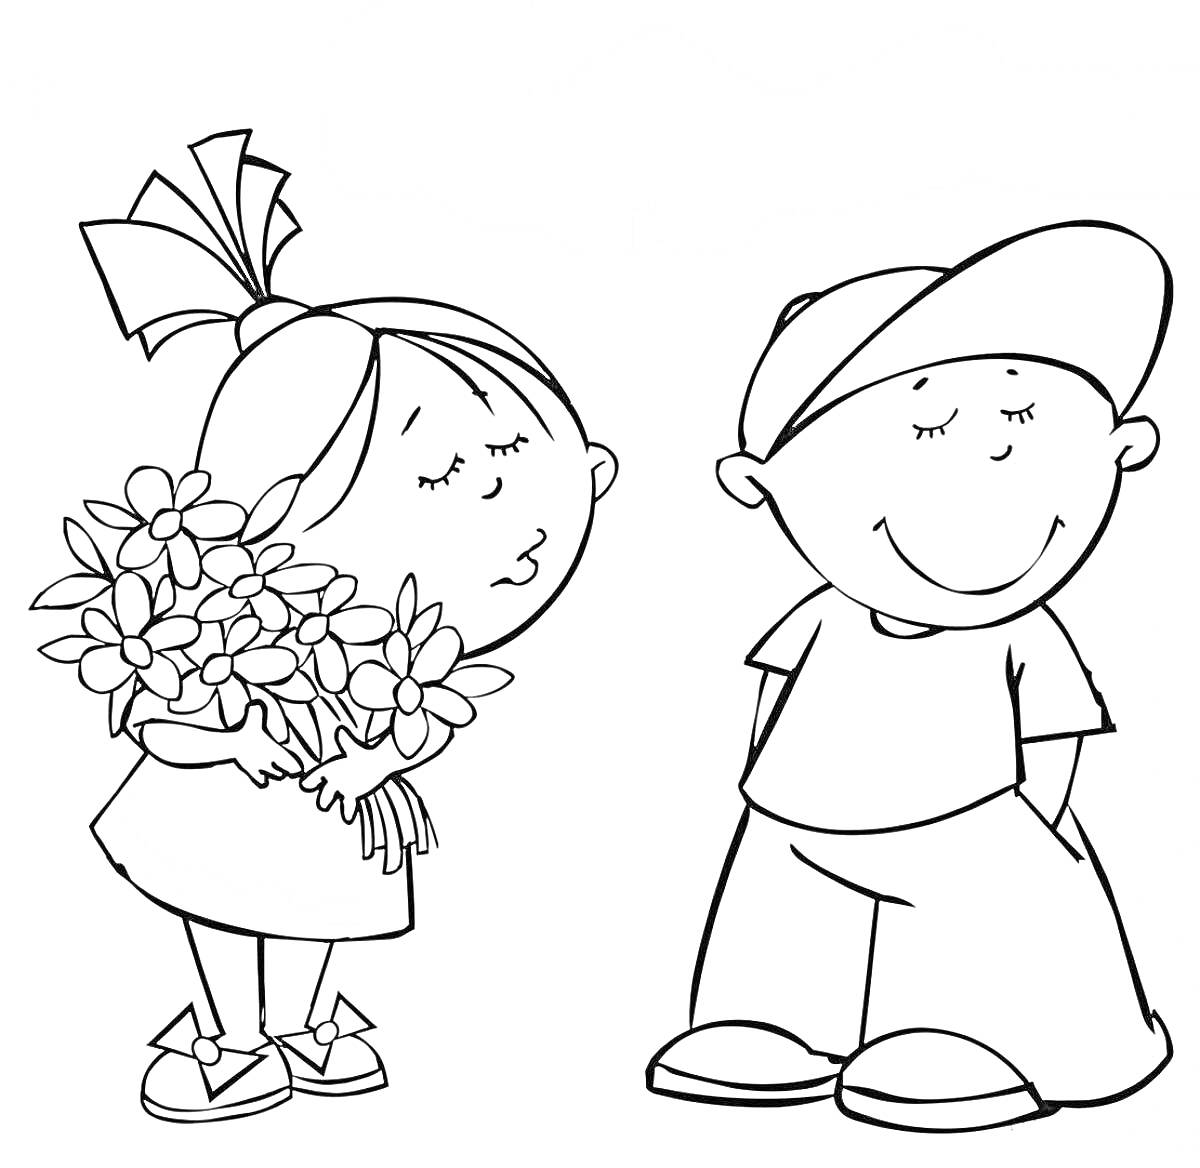 Мальчик и девочка на День защиты детей, девочка с букетом цветов, мальчик в кепке